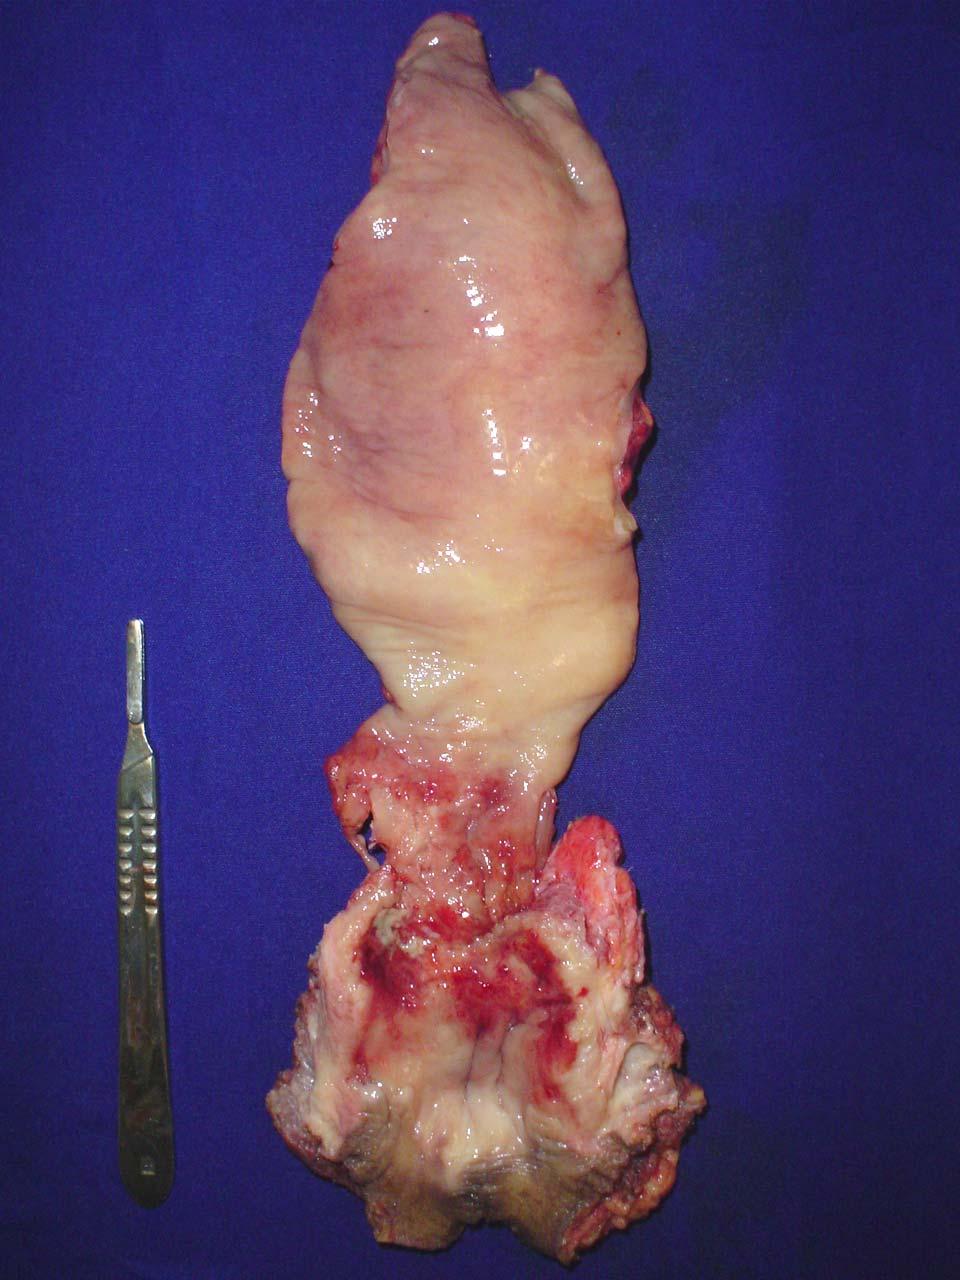 Resultados 23 Bexiga Tumor do reto Figura 5: Amputação abdominoperineal do reto e cistectomia total Essa figura mostrou um tumor de